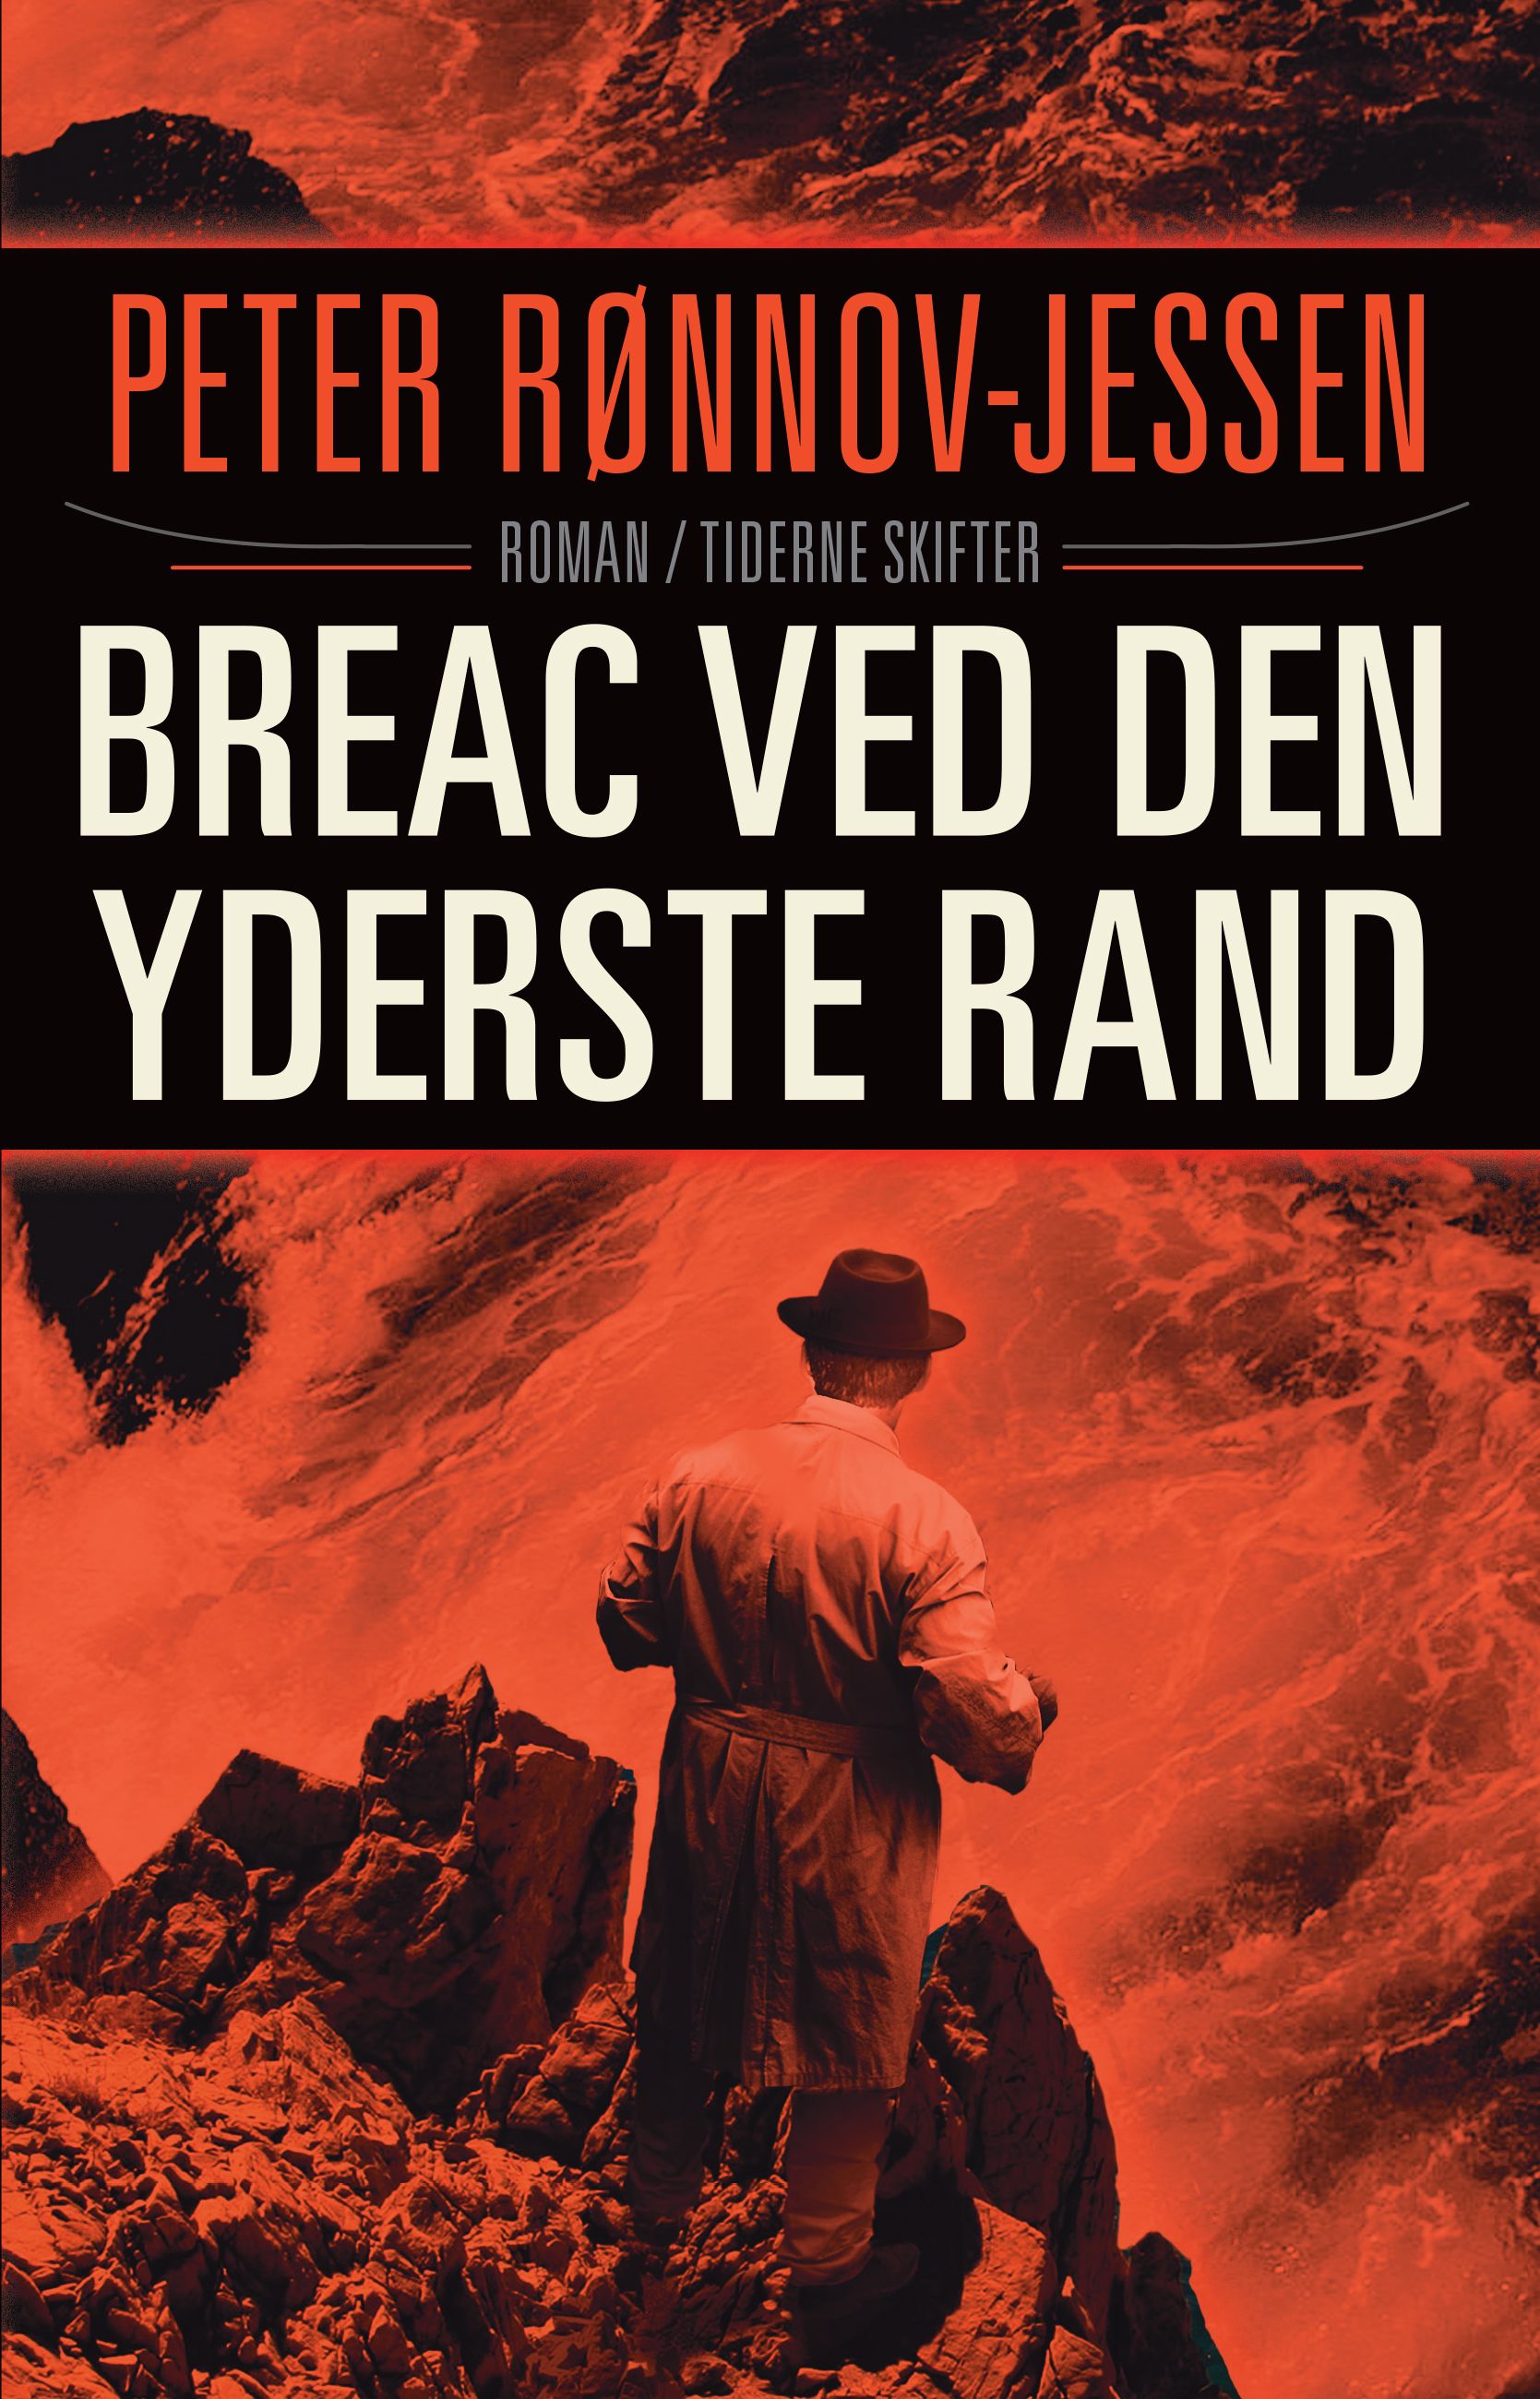 Bréac ved den yderst rand, e-bog af PETER RØNNOV-JESSEN